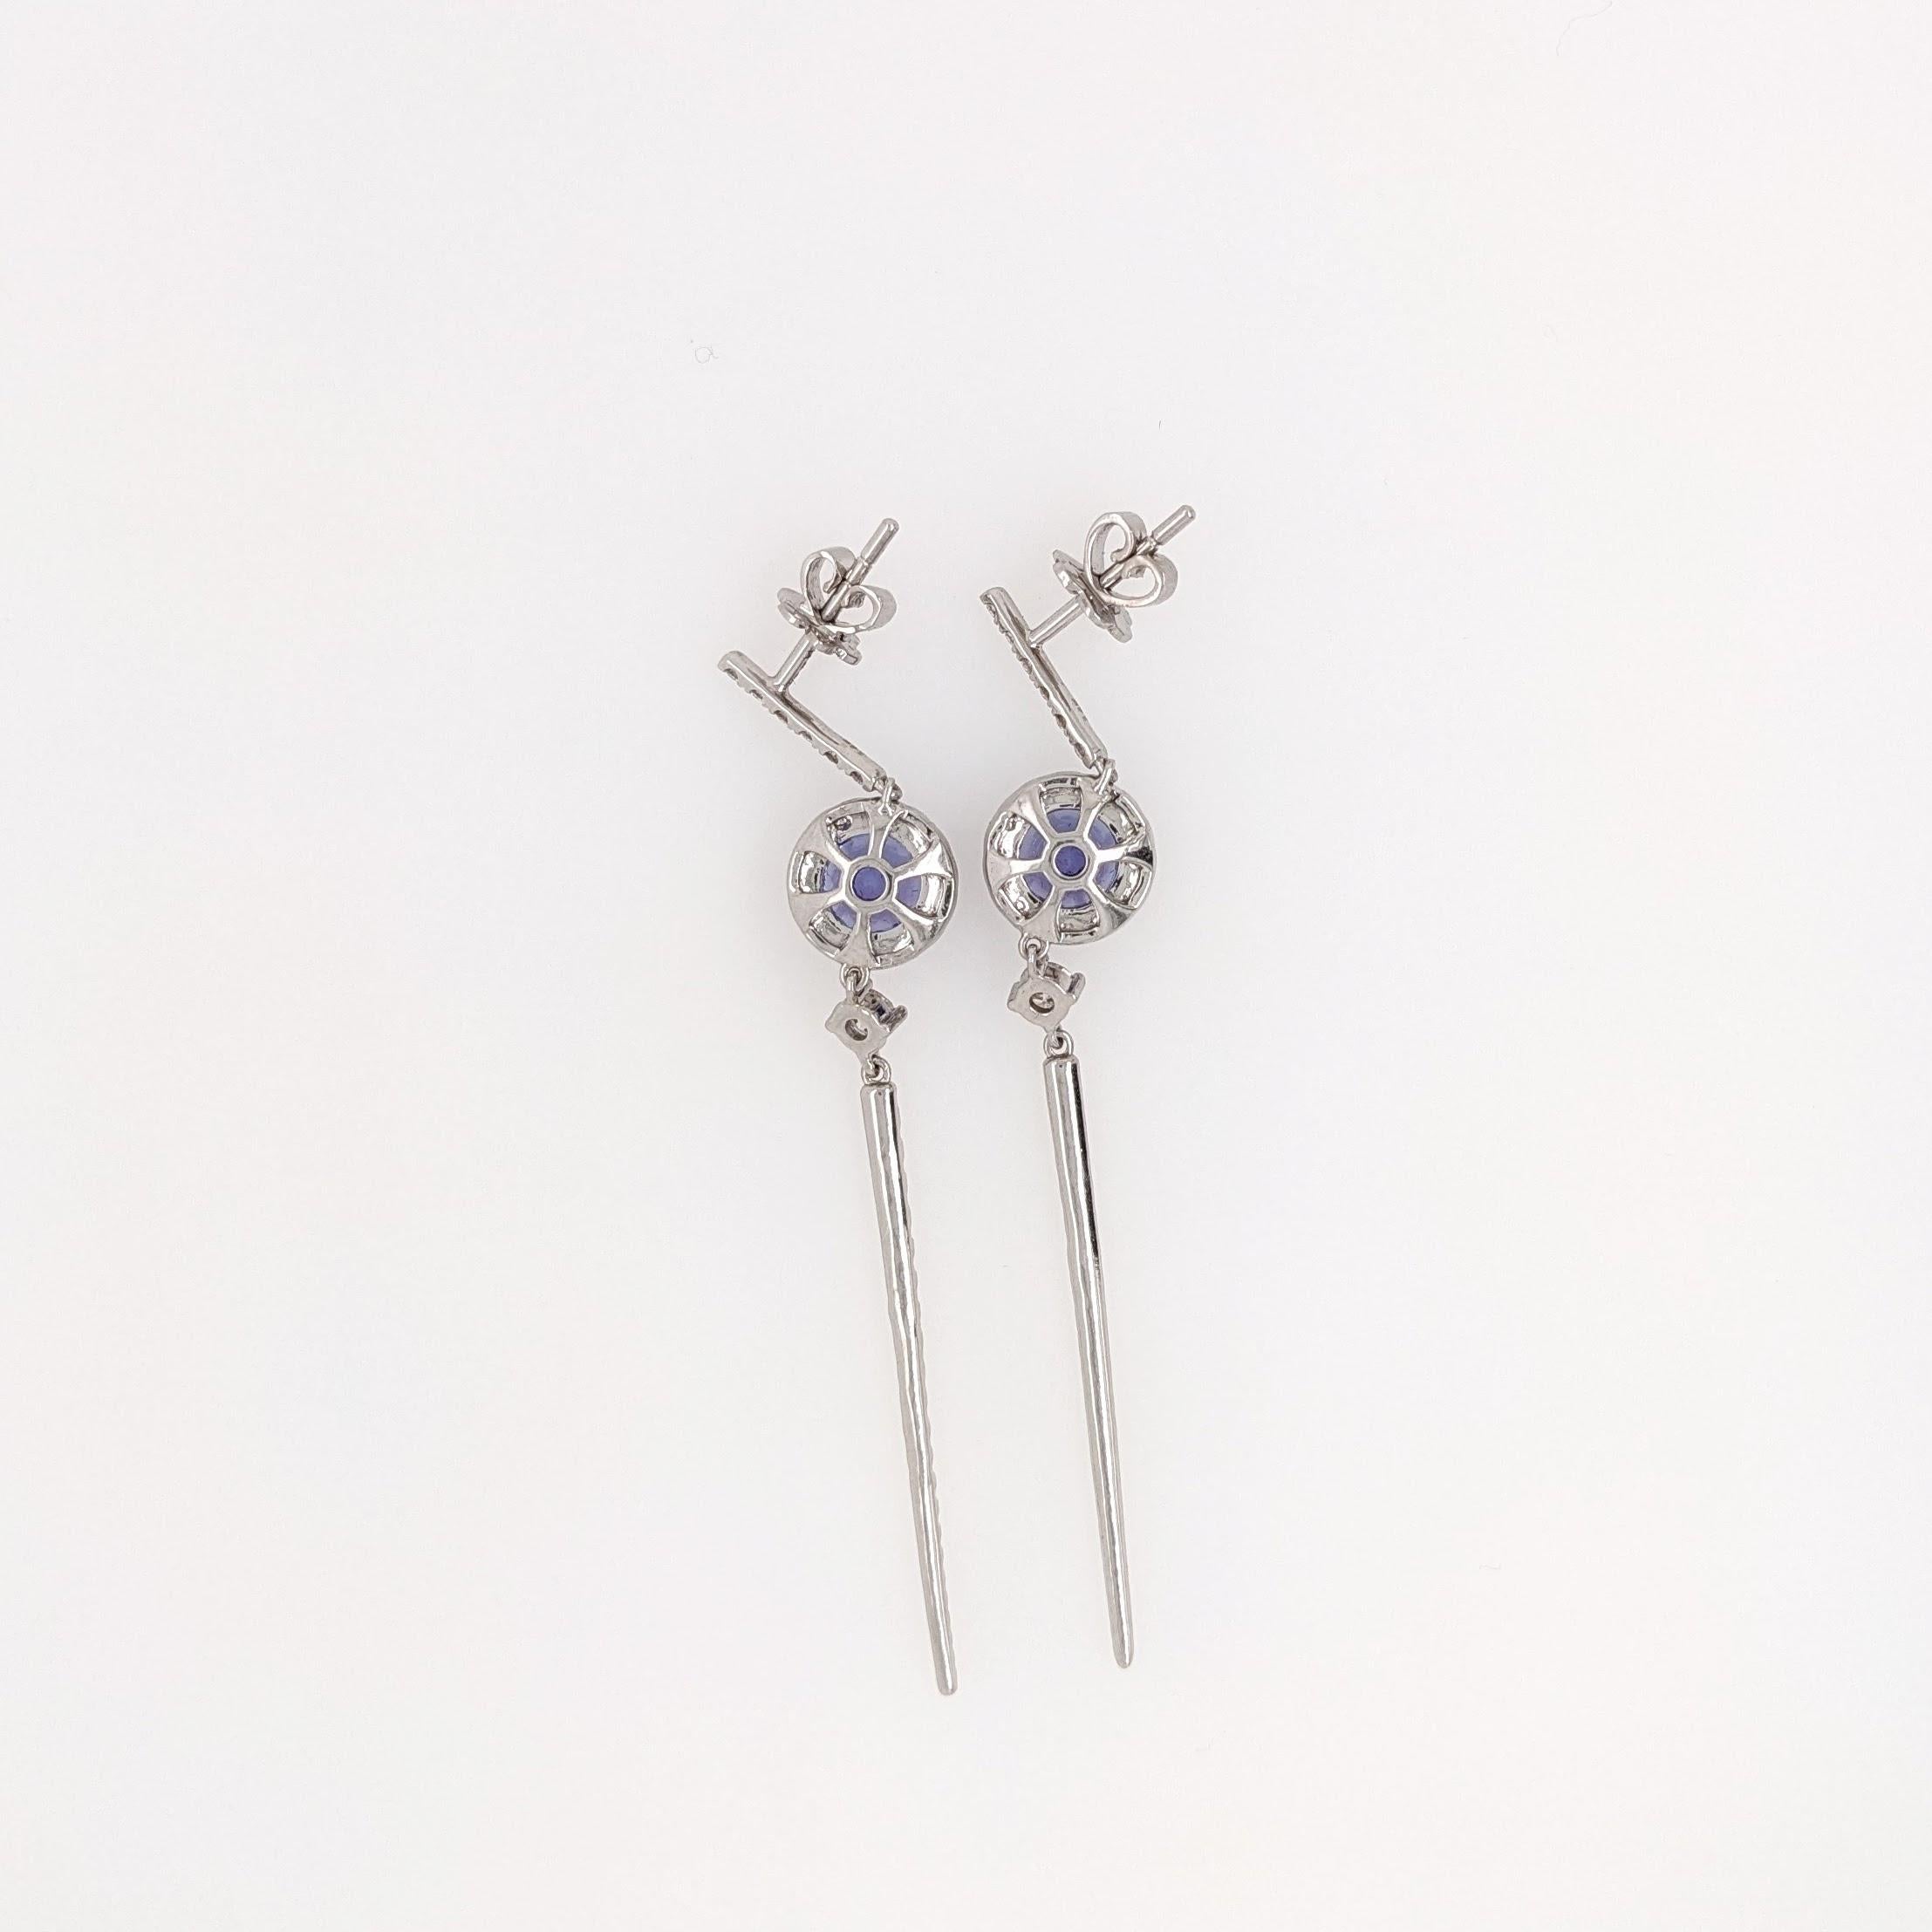 Diese wunderschönen runden Tansanit-Ohrringe sind ein echter Hingucker. Mit 34 natürlichen, aus der Erde geförderten Diamanten ist dieses Schmuckstück perfekt für eine Hochzeit oder einen anderen besonderen Anlass. Diese Ohrringe sind versandfertig